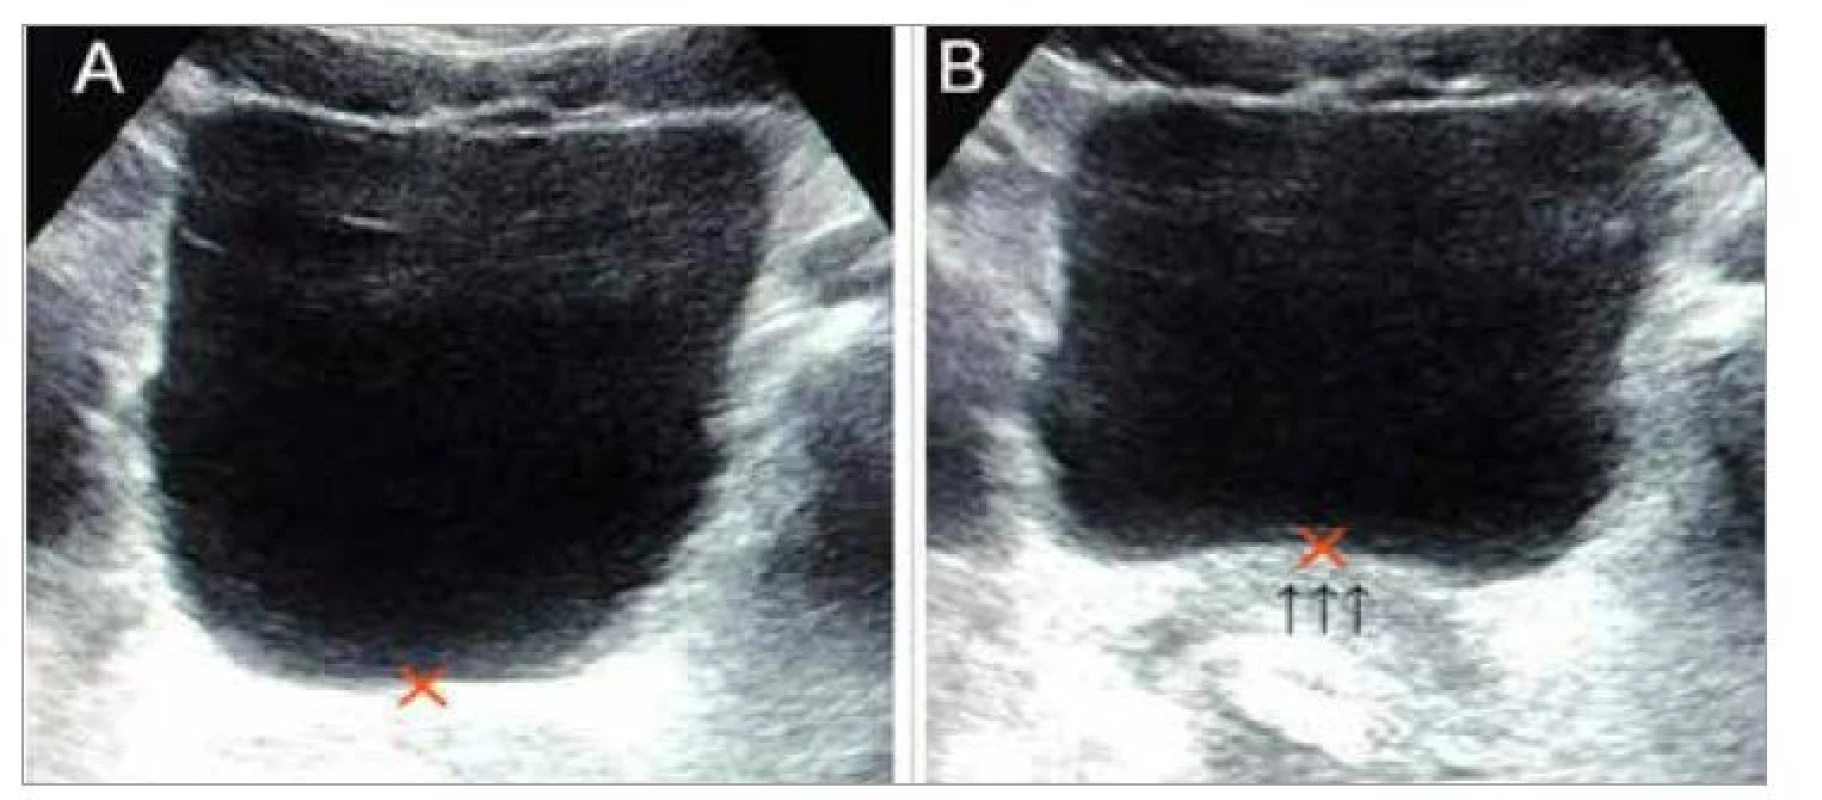 Lift báze močového měchýře (2D ultrazvuk).<br>
1A – výchozí klidová poloha svalů pánevního dna označena křížkem<br>
1B – lift báze močového měchýře vyznačený šipkami<br>
Fig. 1. Lift of the bladder base (2D ultrasound).<br>
1A – initial resting position of the pelvic floor muscles marked with a cross<br>
1B – bladder base lift indicated by arrows